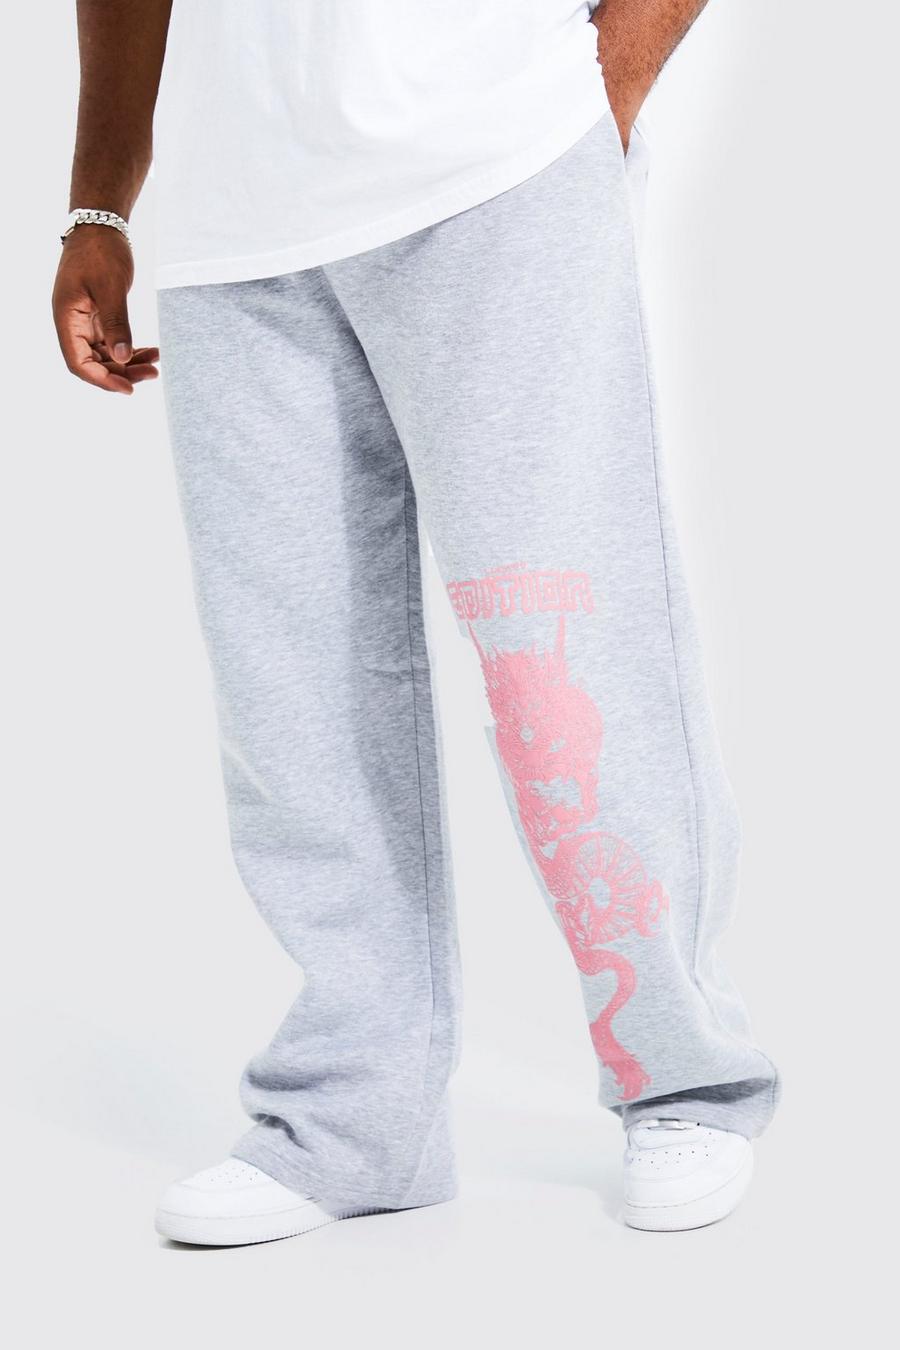 Pantalón deportivo Plus holgado con estampado de dragón Limited Edition, Grey marl grigio